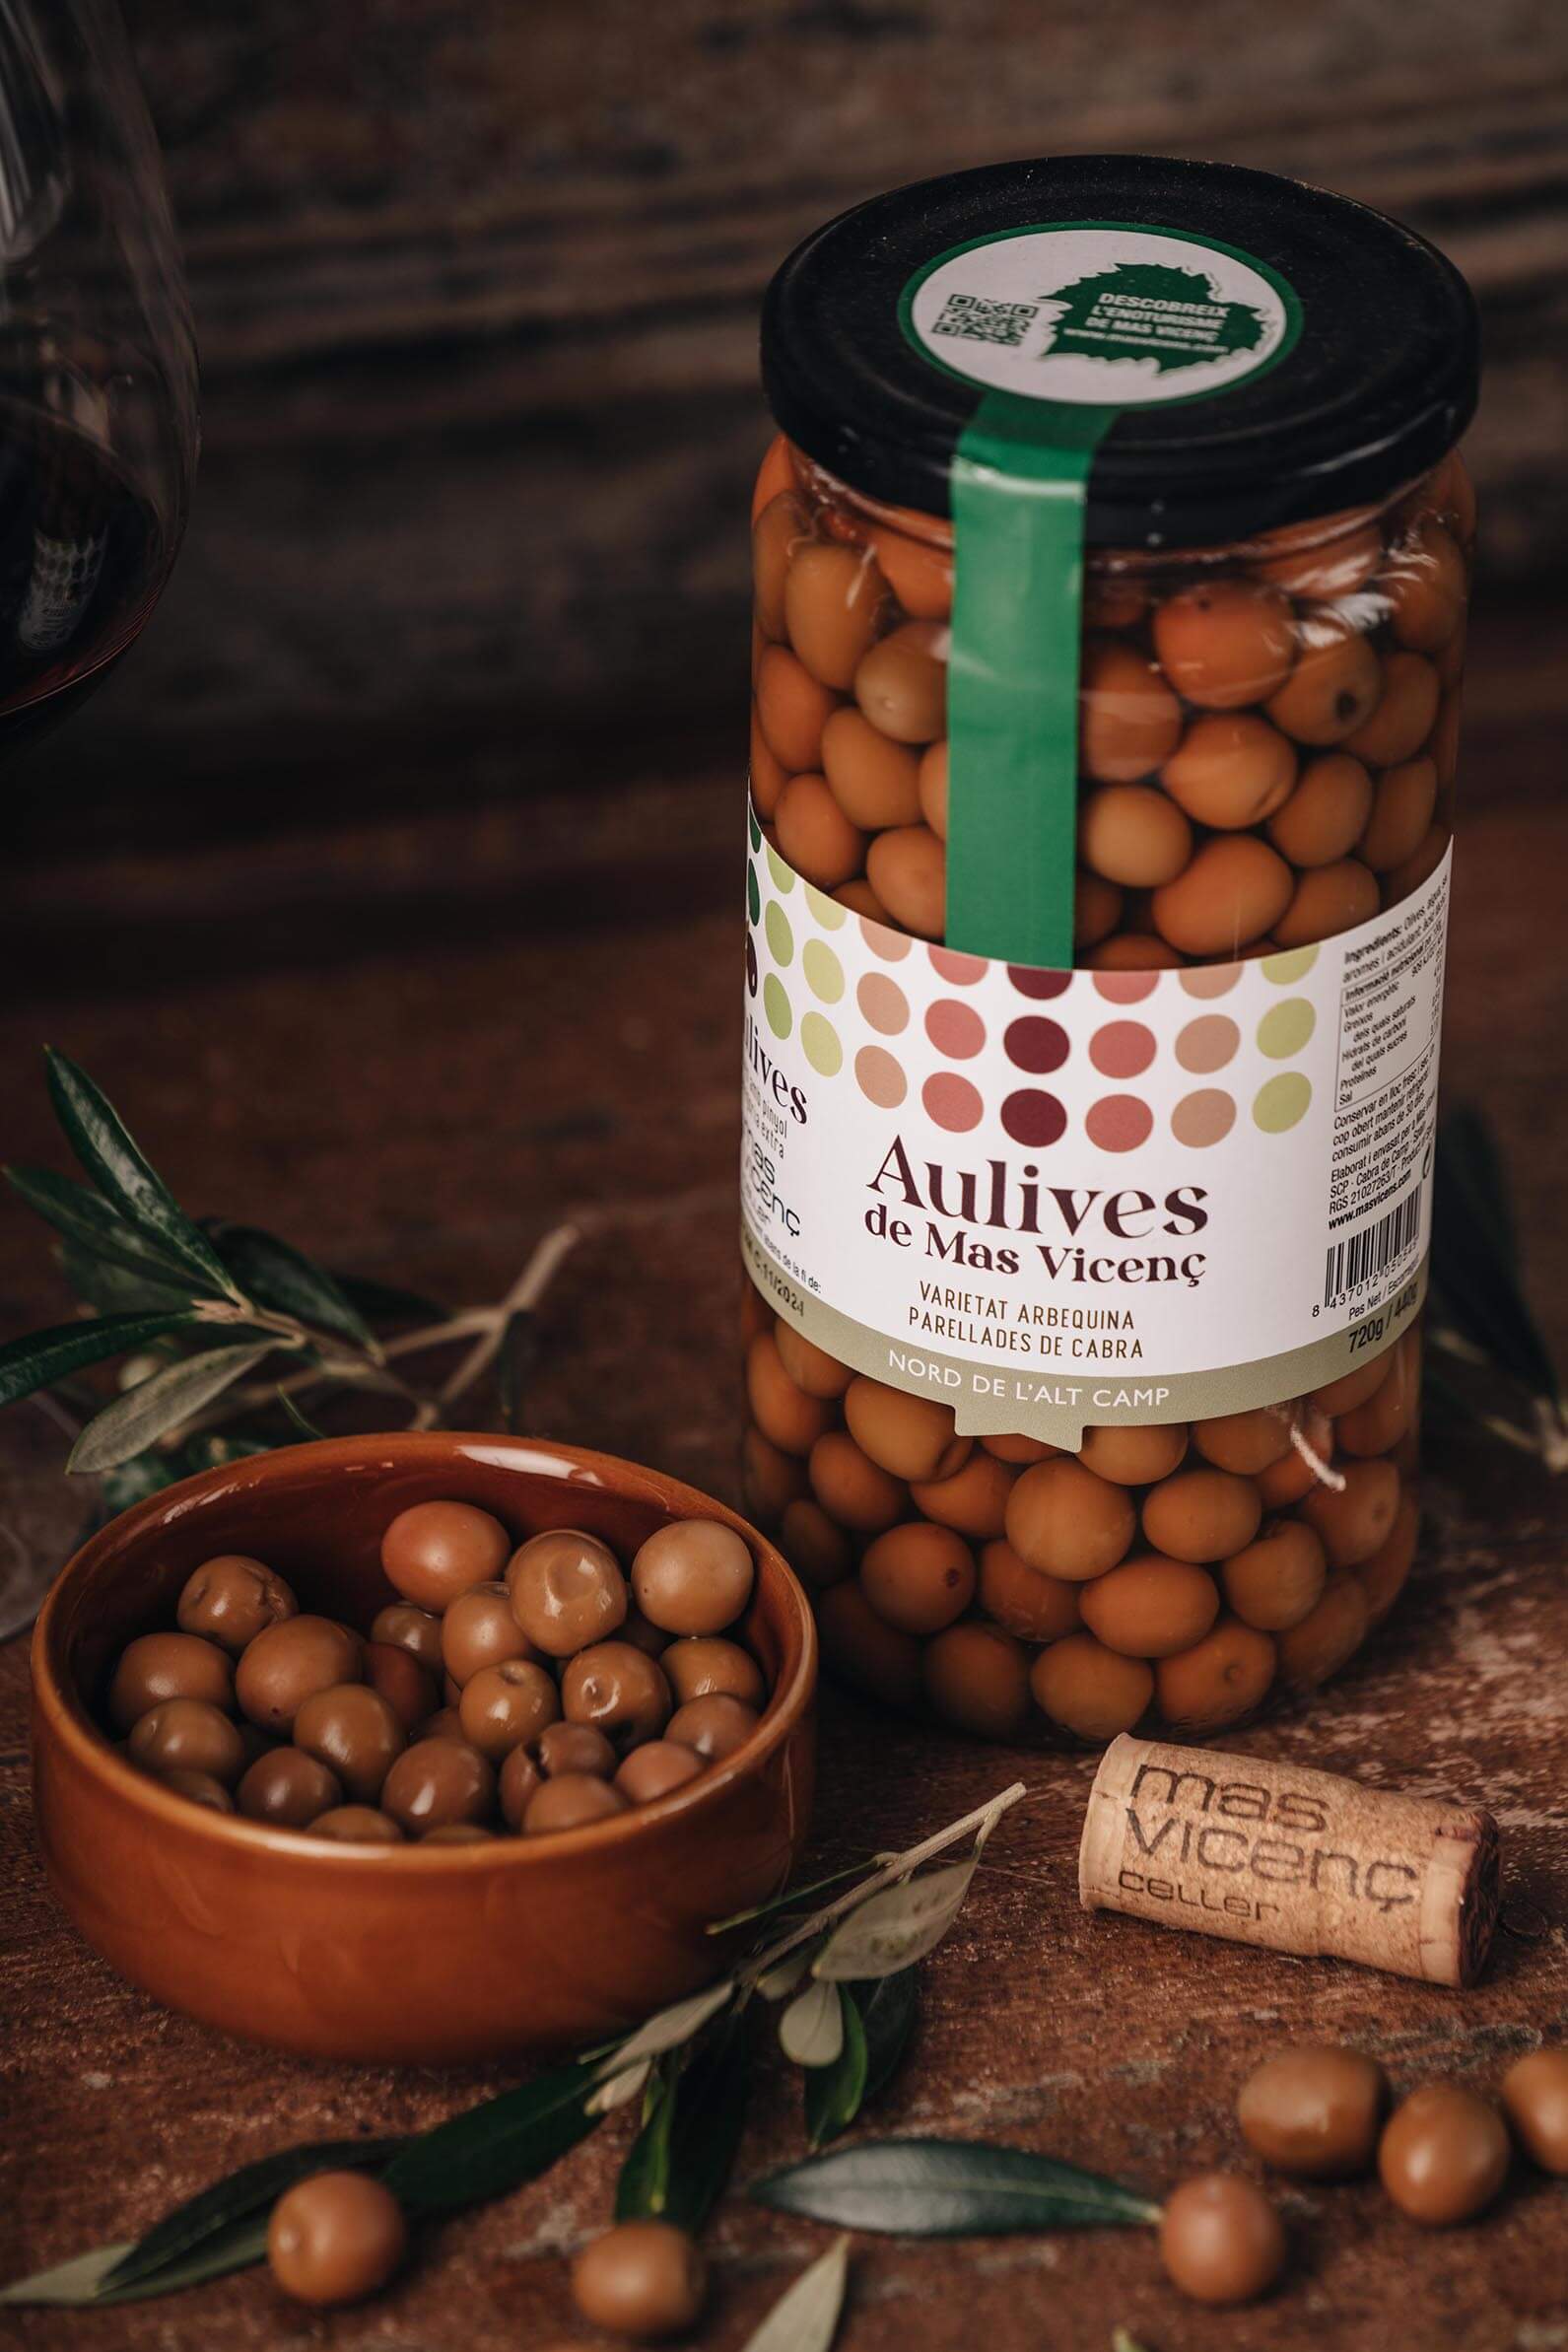 Aulives, les olives de Mas Vicenç